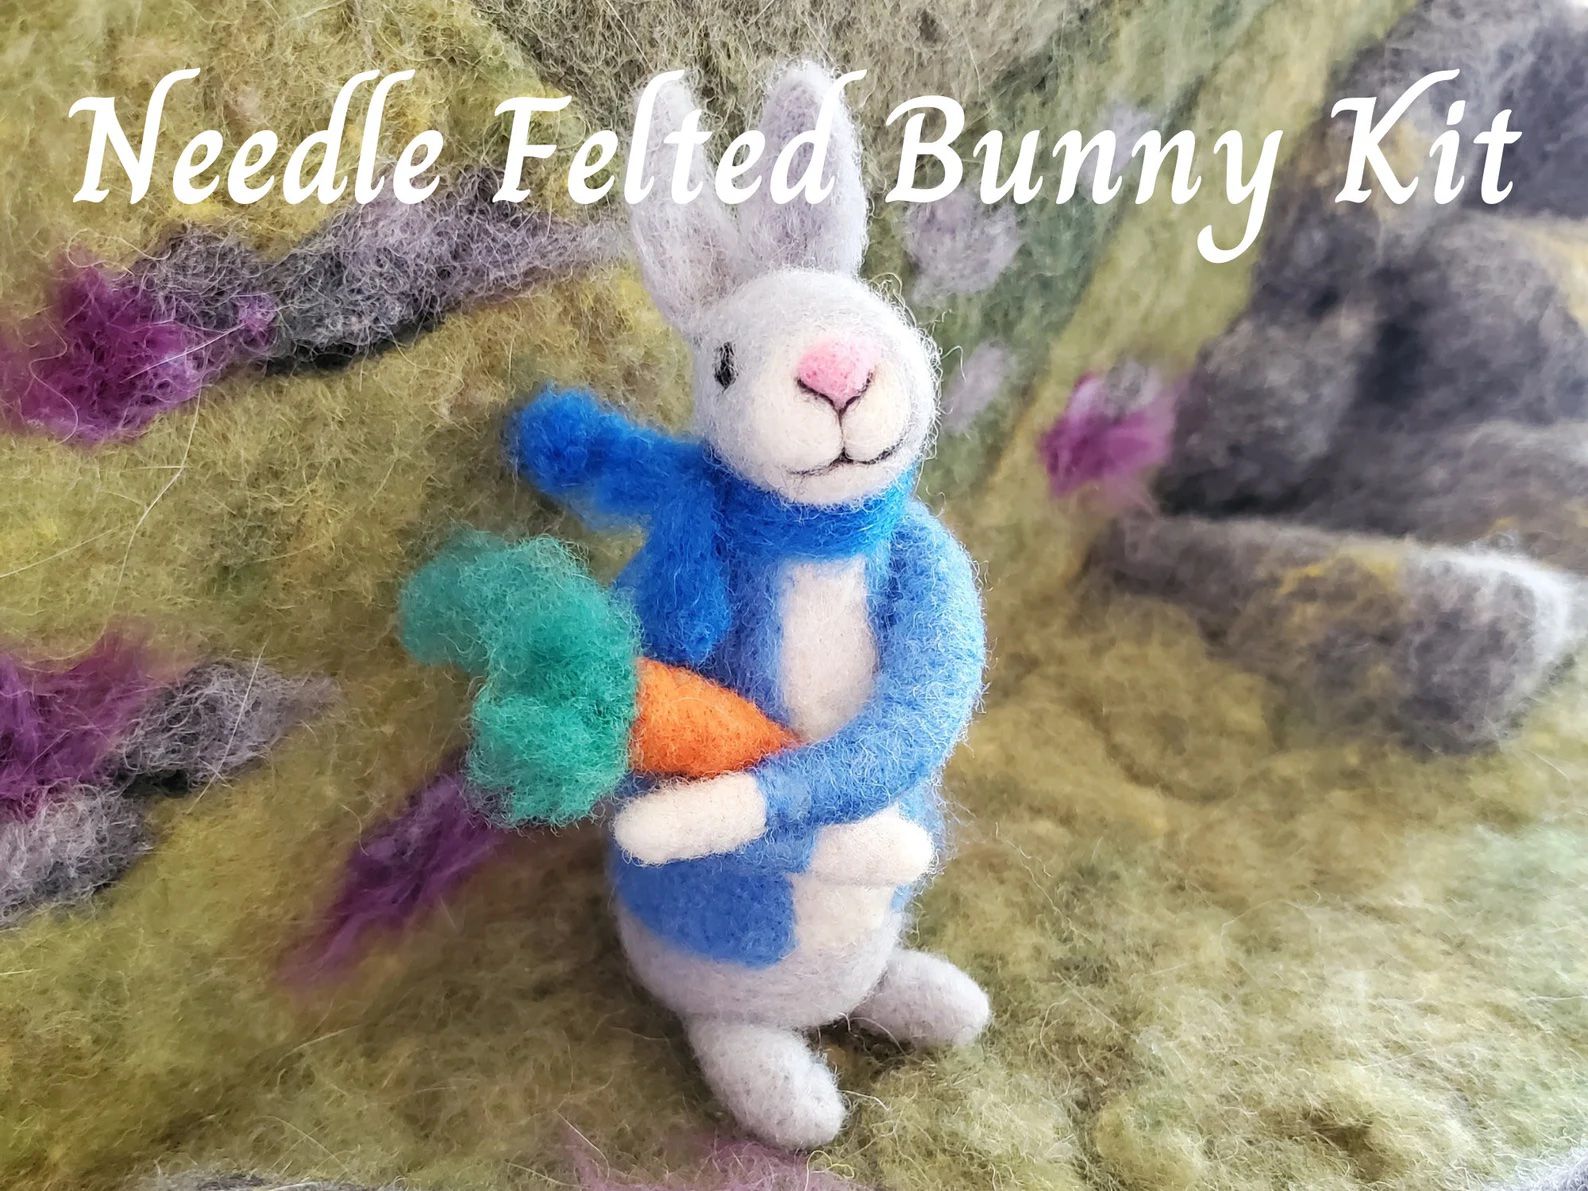 peter rabbit made from wool felt